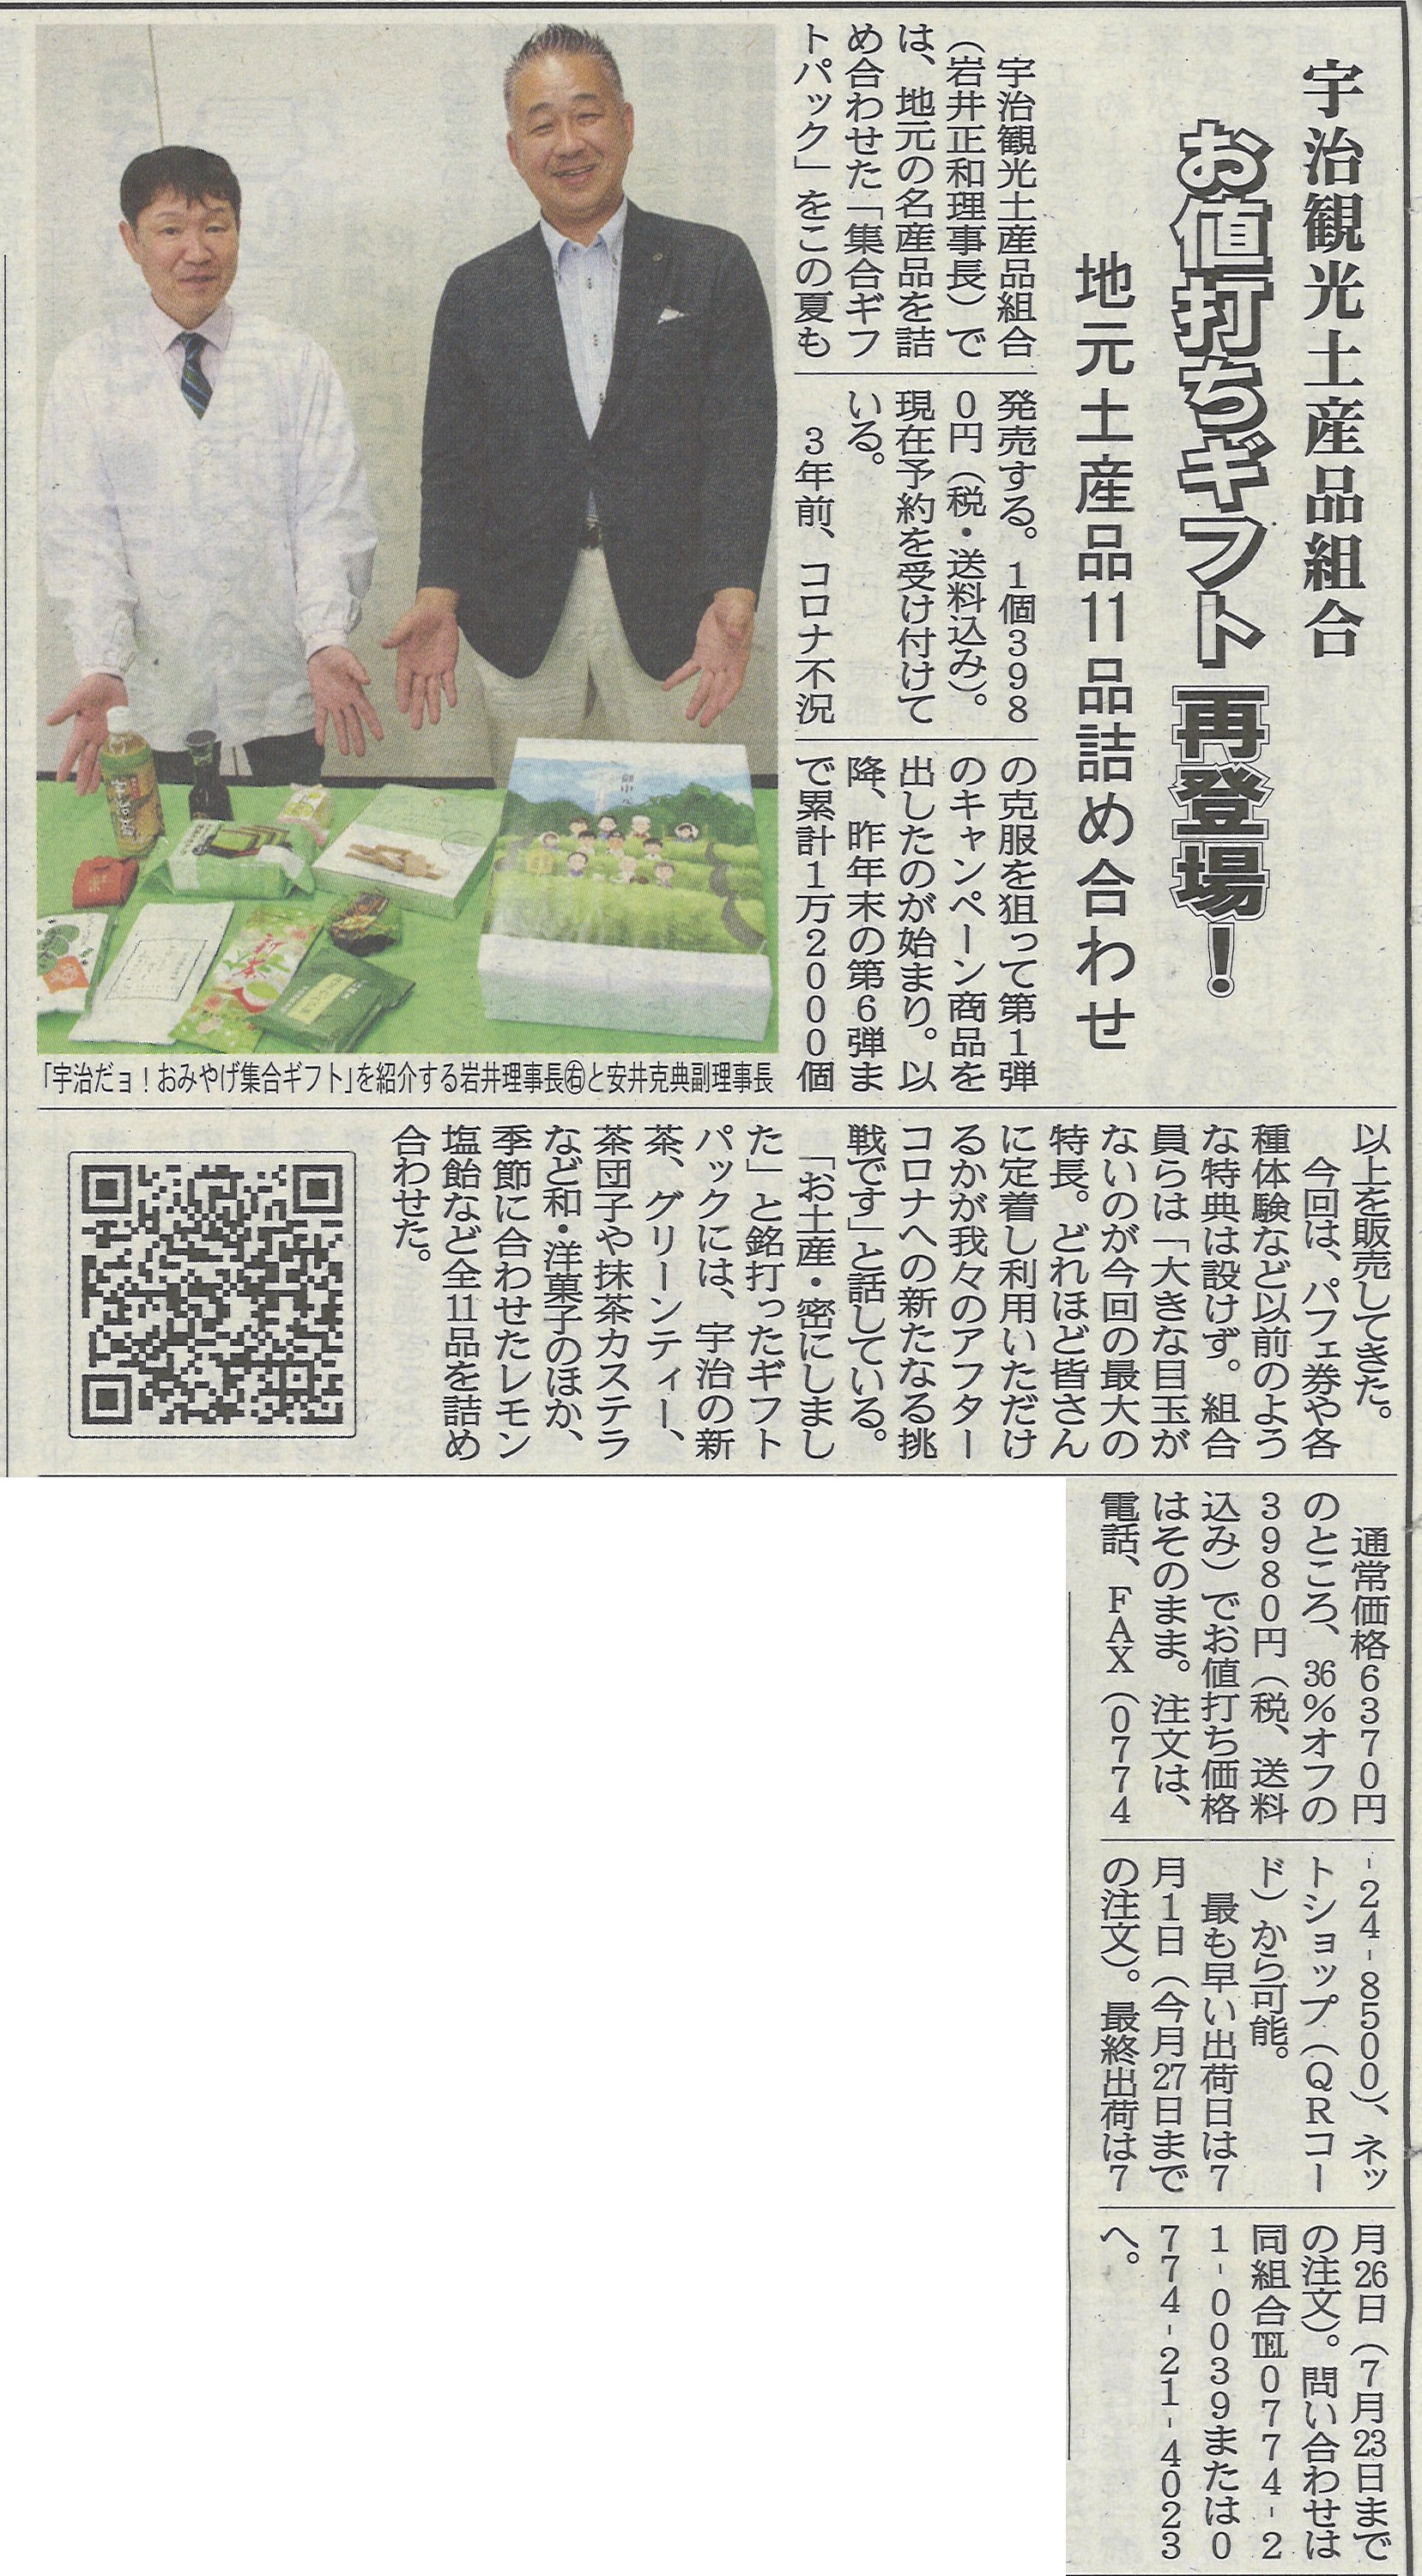 6月17日 洛タイ新報にて宇治観光土産品組合による第7回目のお中元ギフトが紹介